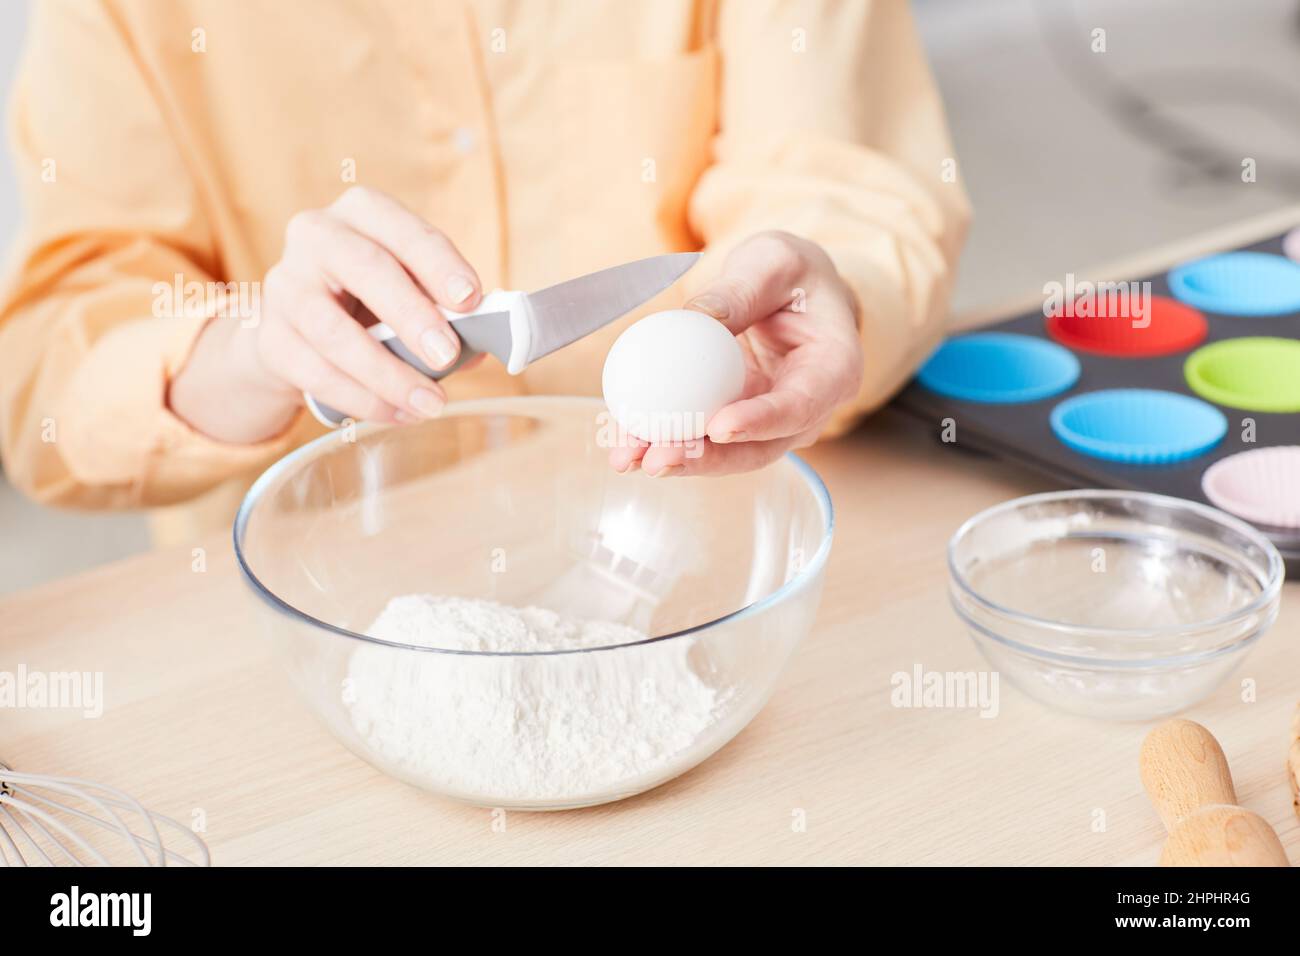 Nahaufnahme einer jungen Frau, die Eier zerbricht, während sie in der Küche hausgemachte Muffins backen, Platz zum Kopieren Stockfoto